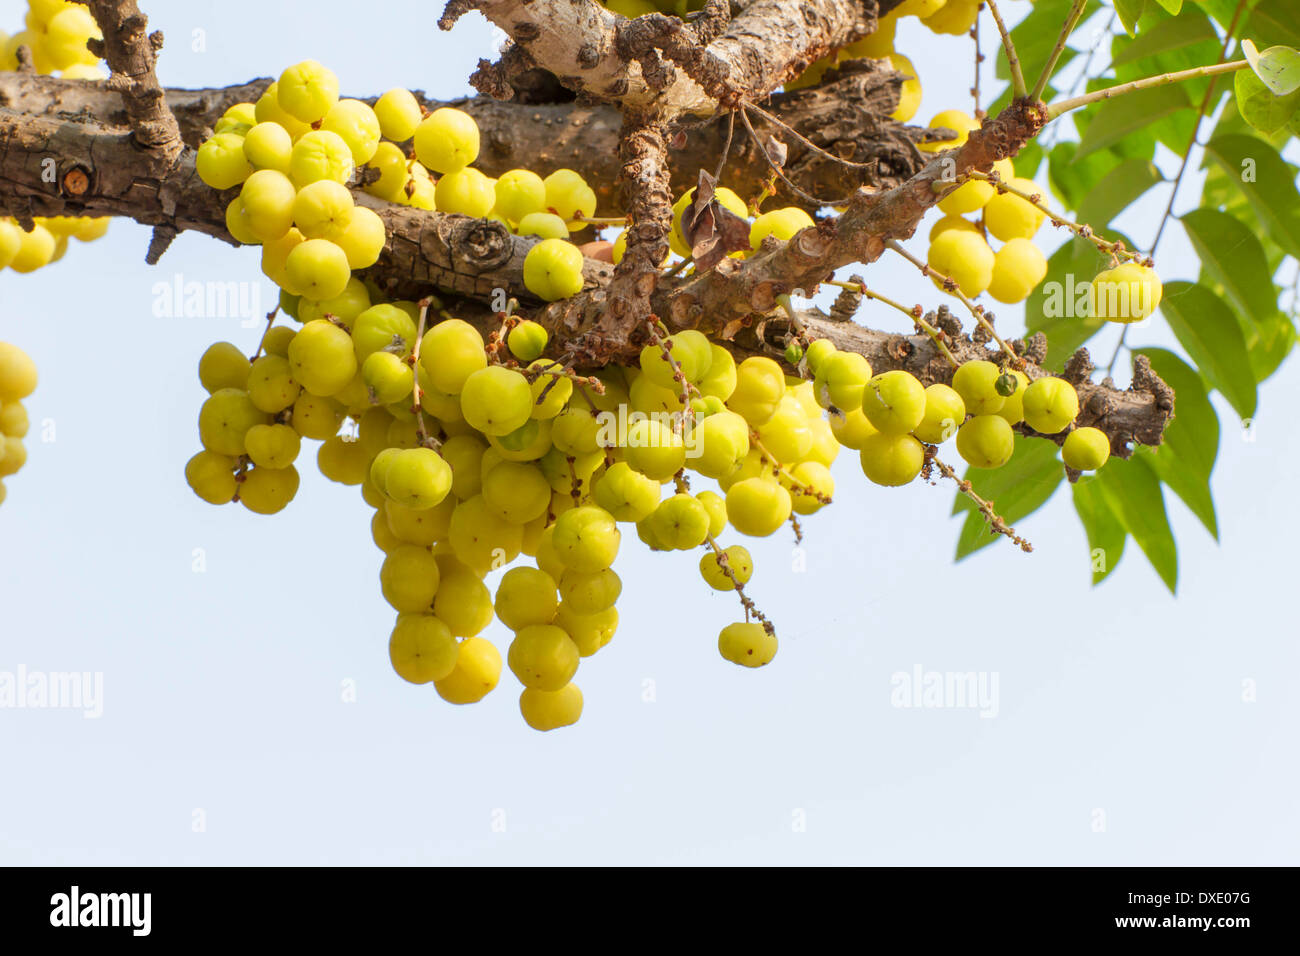 Star Gosseberry Phyllanthus acidus tree Stock Photo